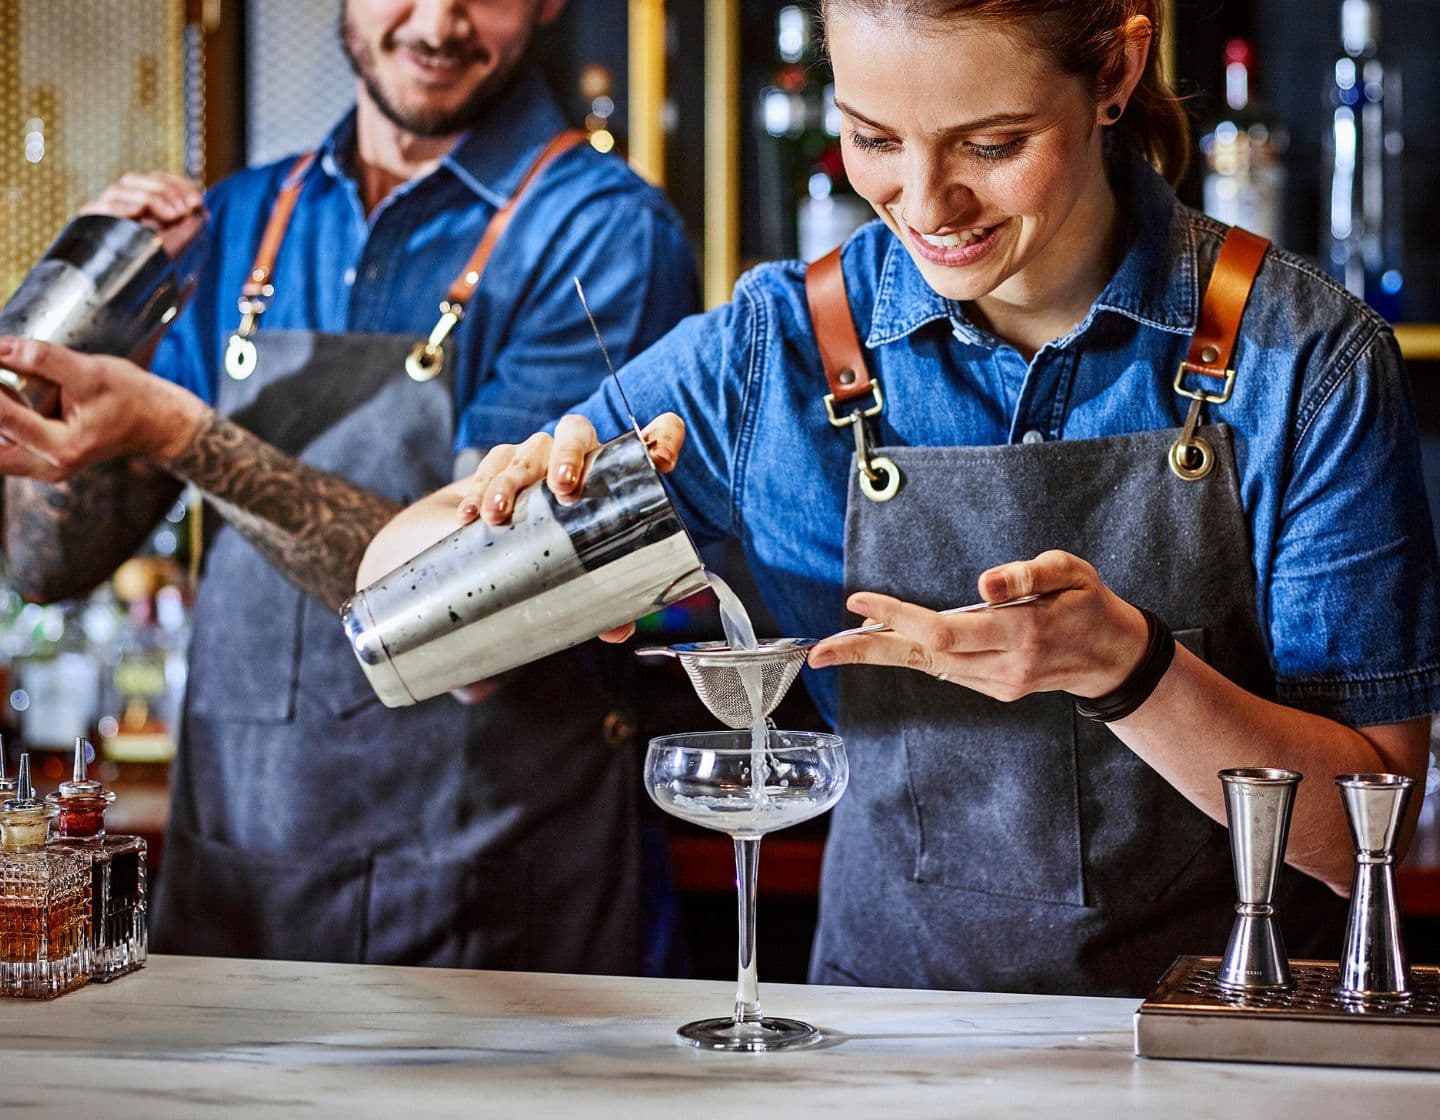 Bartenders trabalhando juntos, servindo do shaker em copo